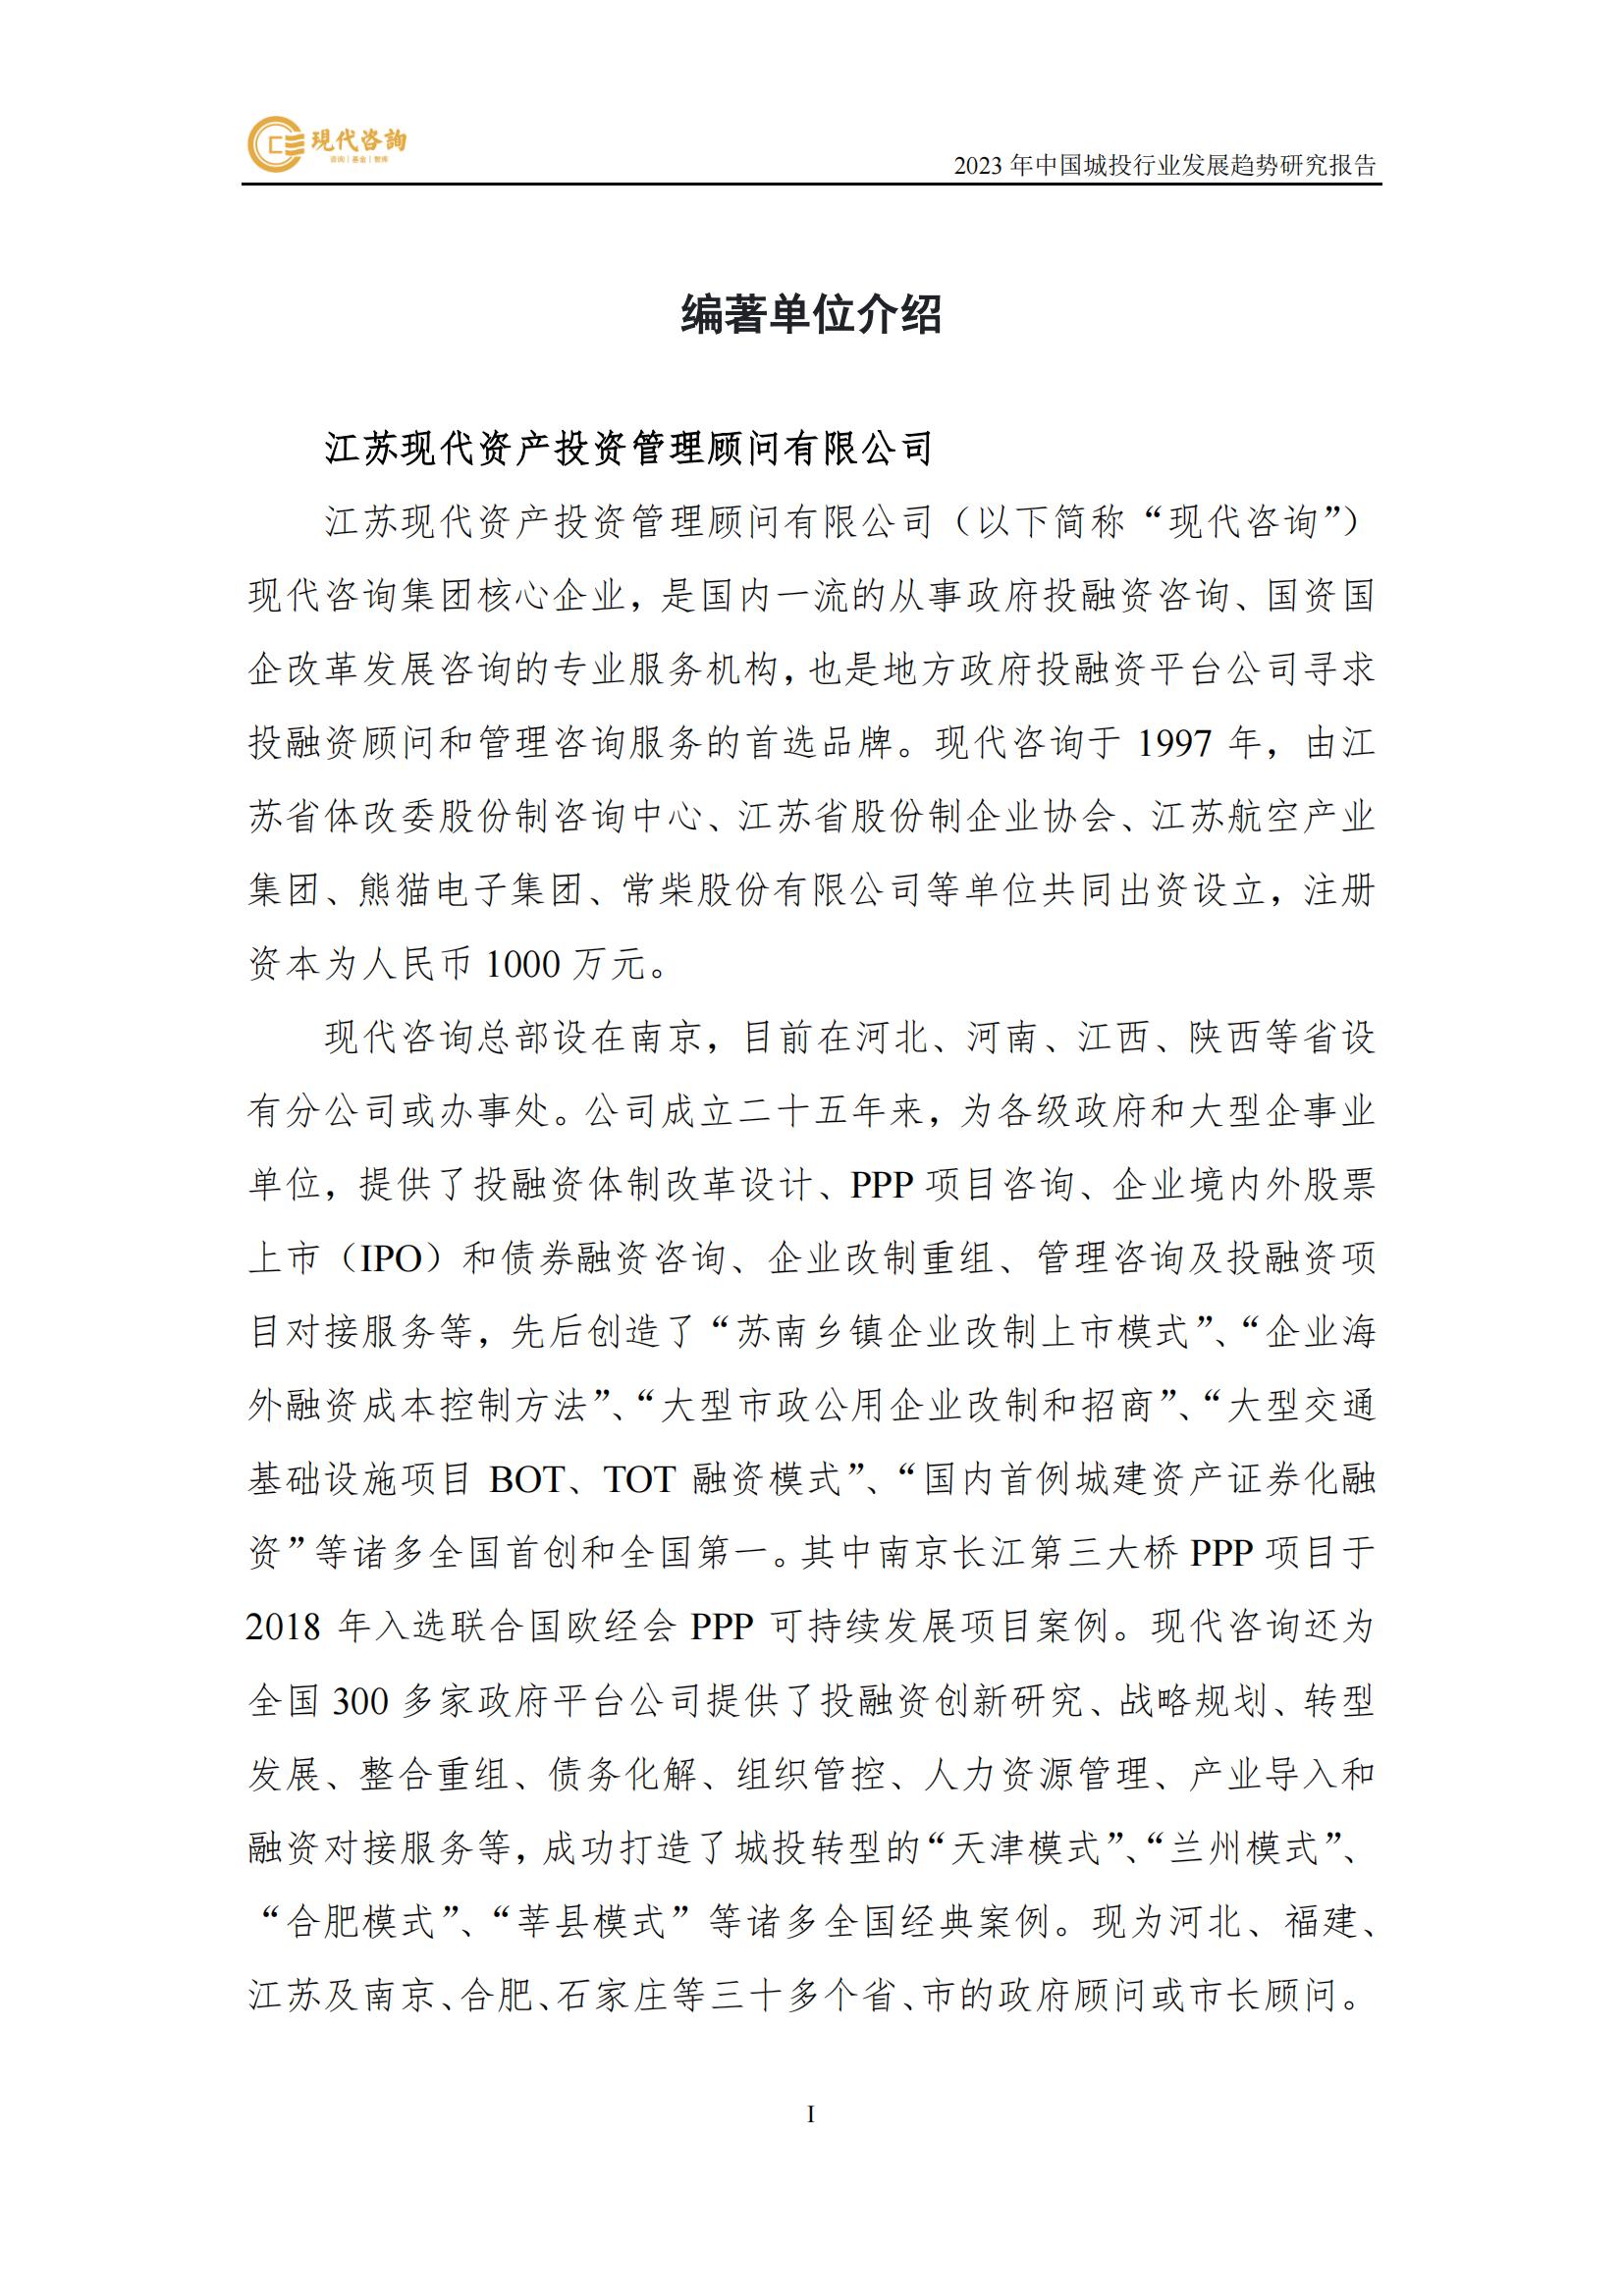 中國城投行業發展趨勢研究報告（2023）(2)_01.jpg